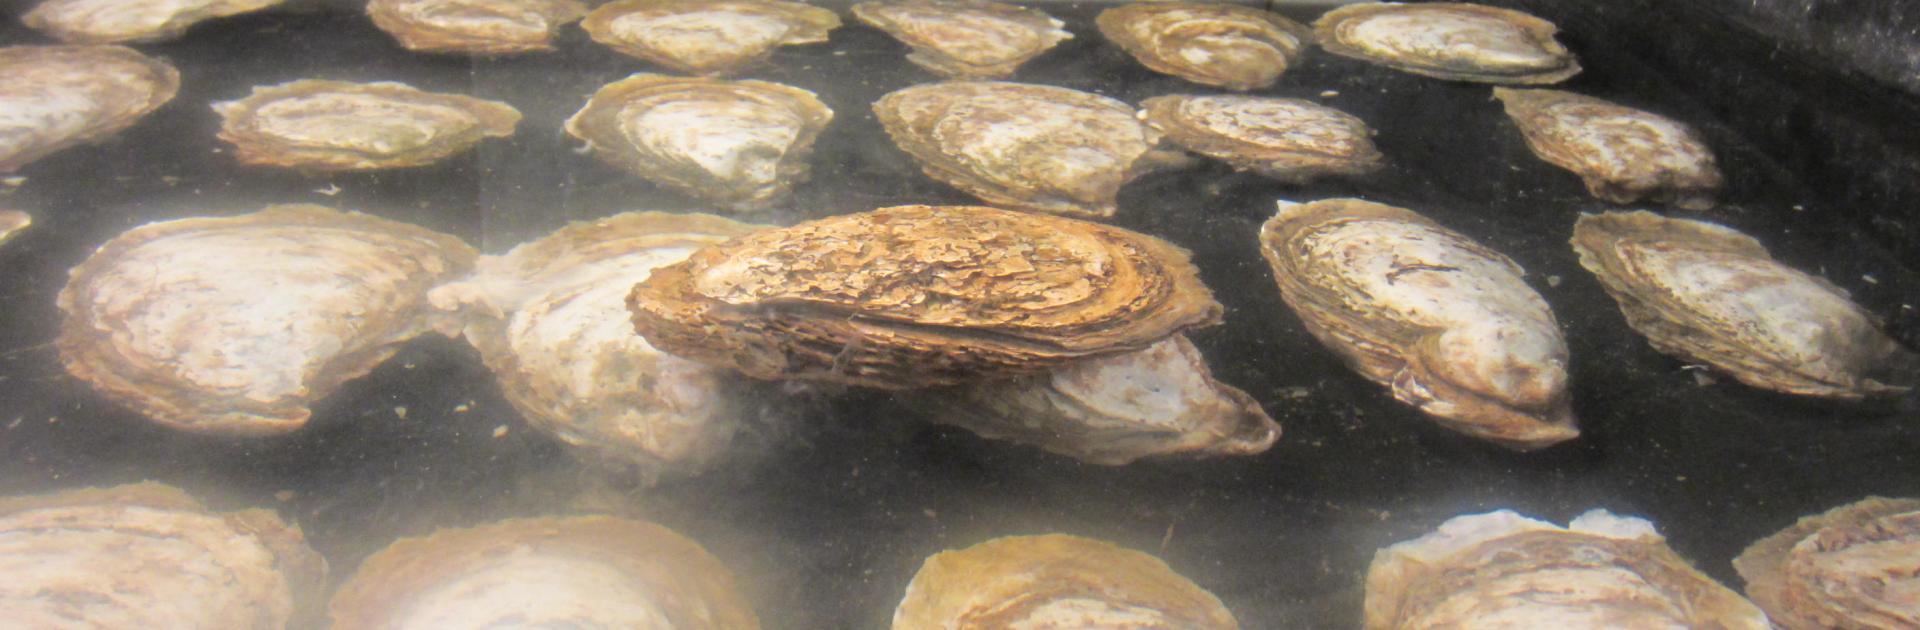 oyster breeding